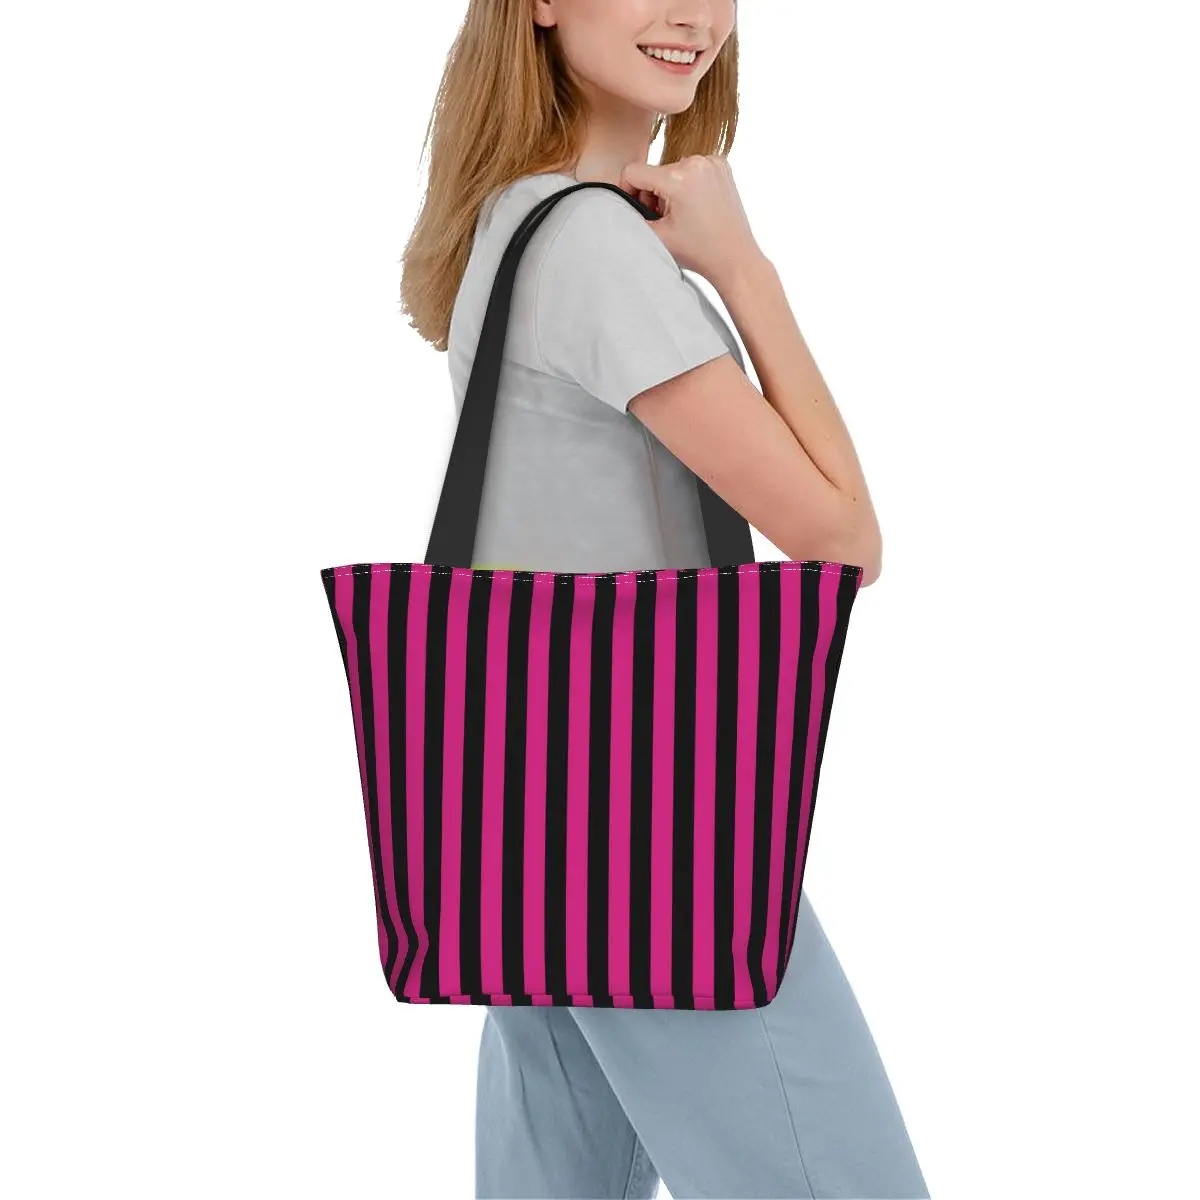 

Сумка-шоппер в Вертикальную Полоску, черные и фиолетовые сумки для отдыха, сумка-тоут из полиэстера для колледжа, женская пляжная сумка на заказ